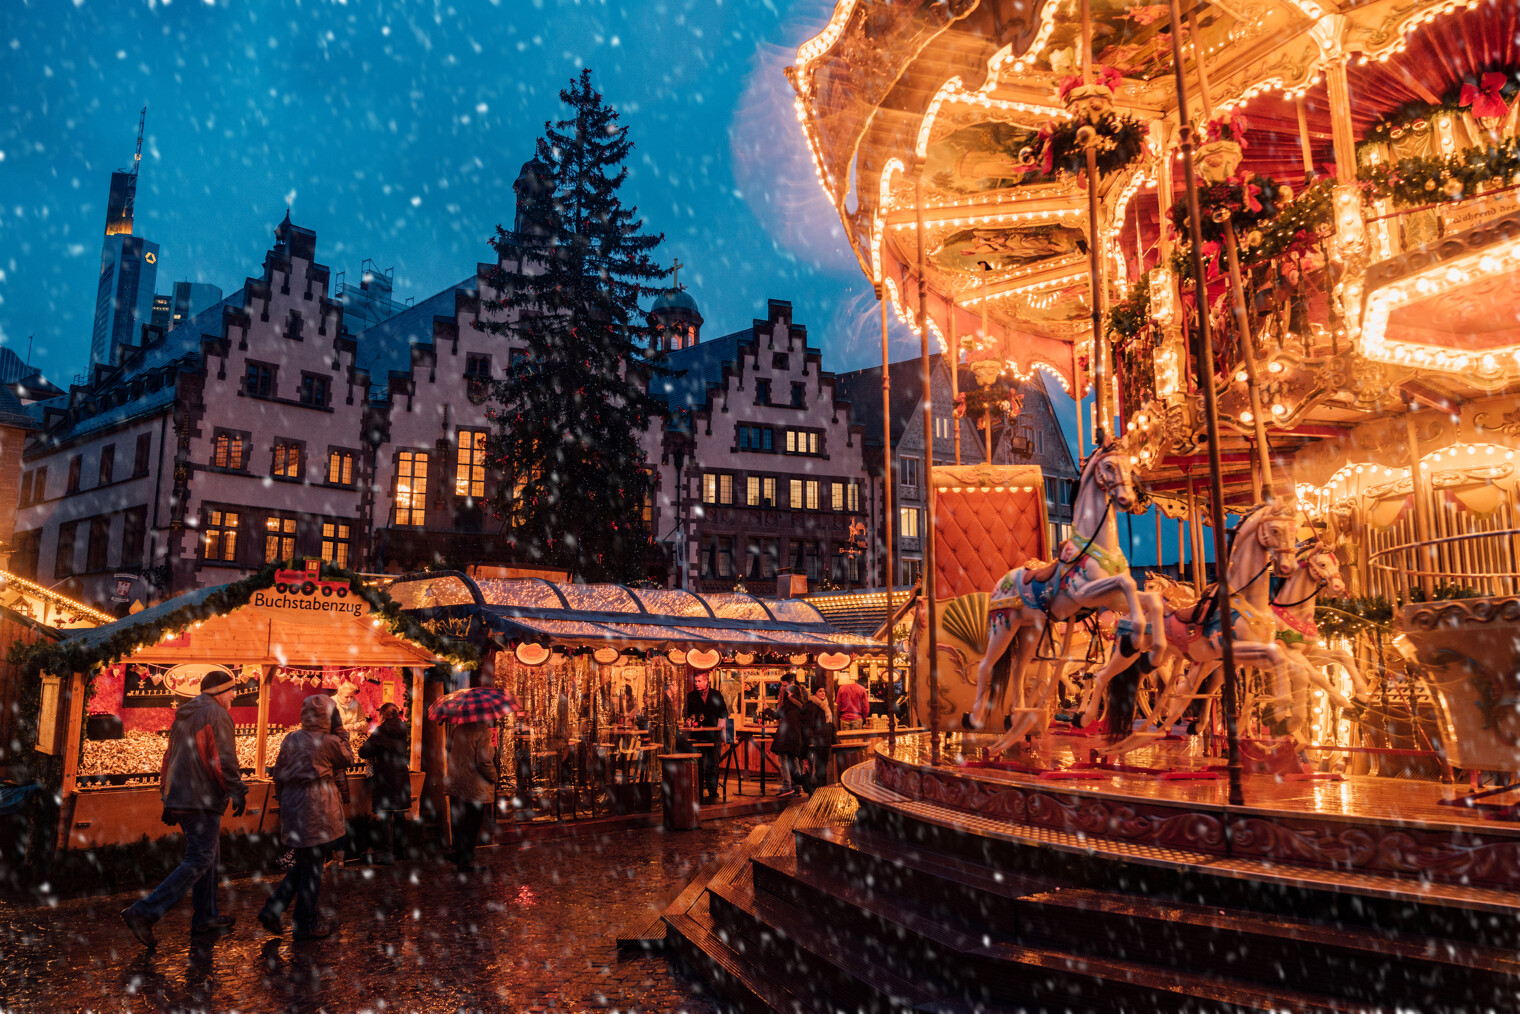 Le marché de Noël de Francfort en Allemagne